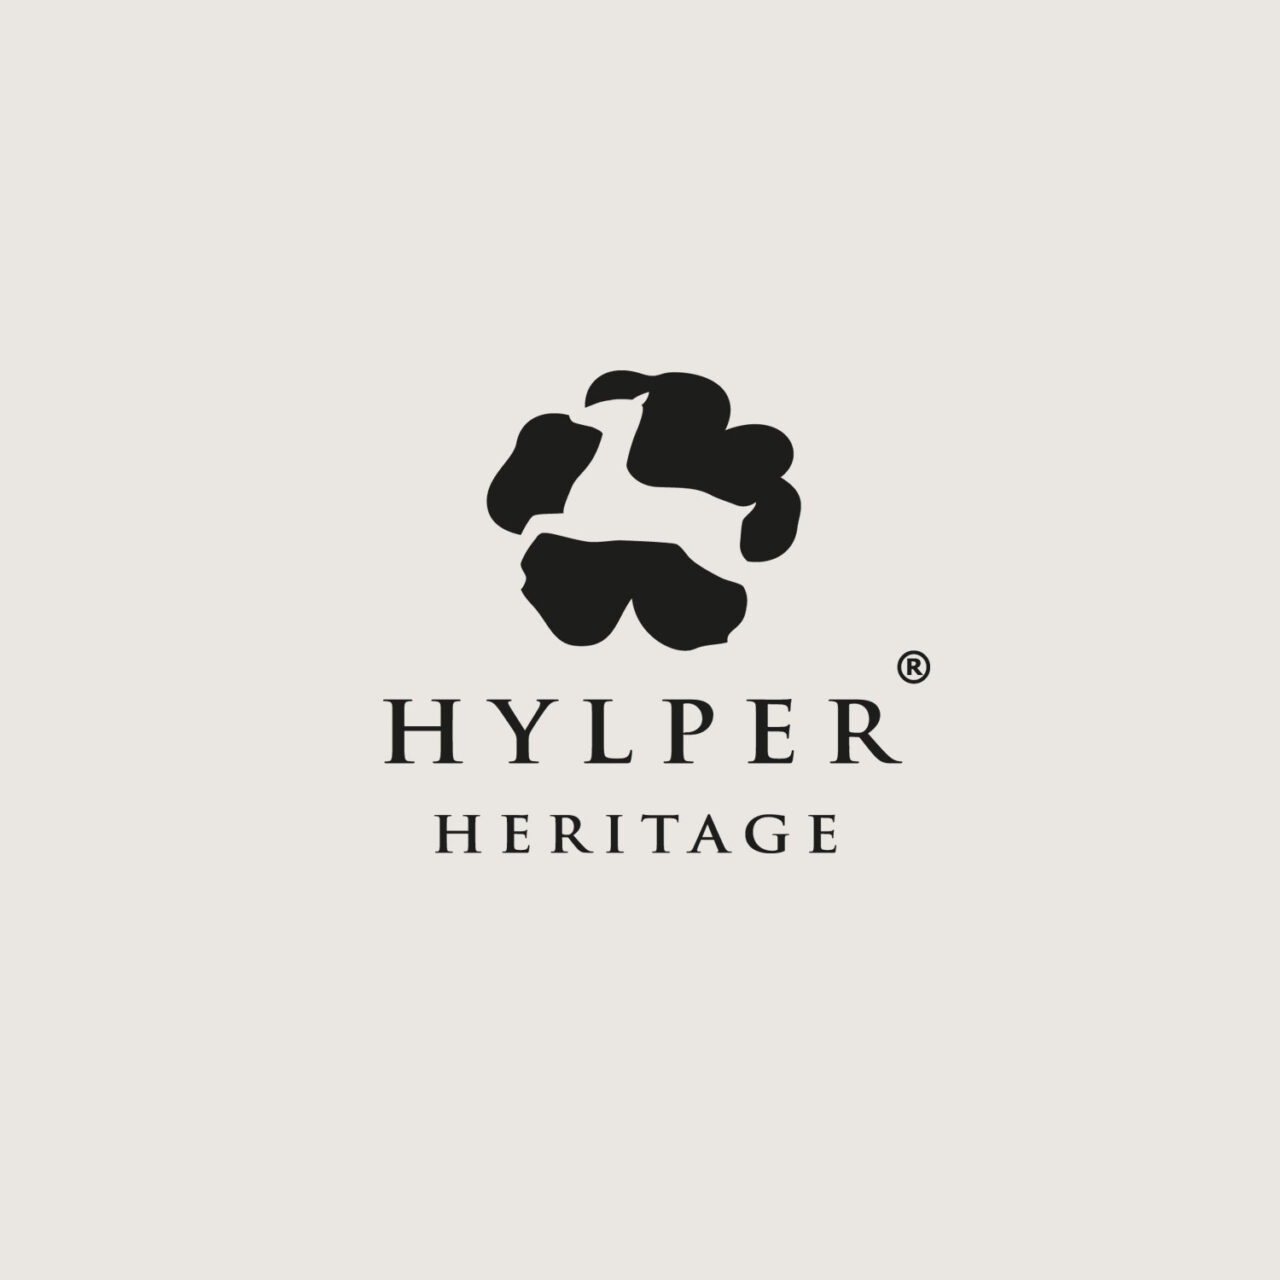 Studio Chris10 - Huisstijl en website voor Hylper Heritage